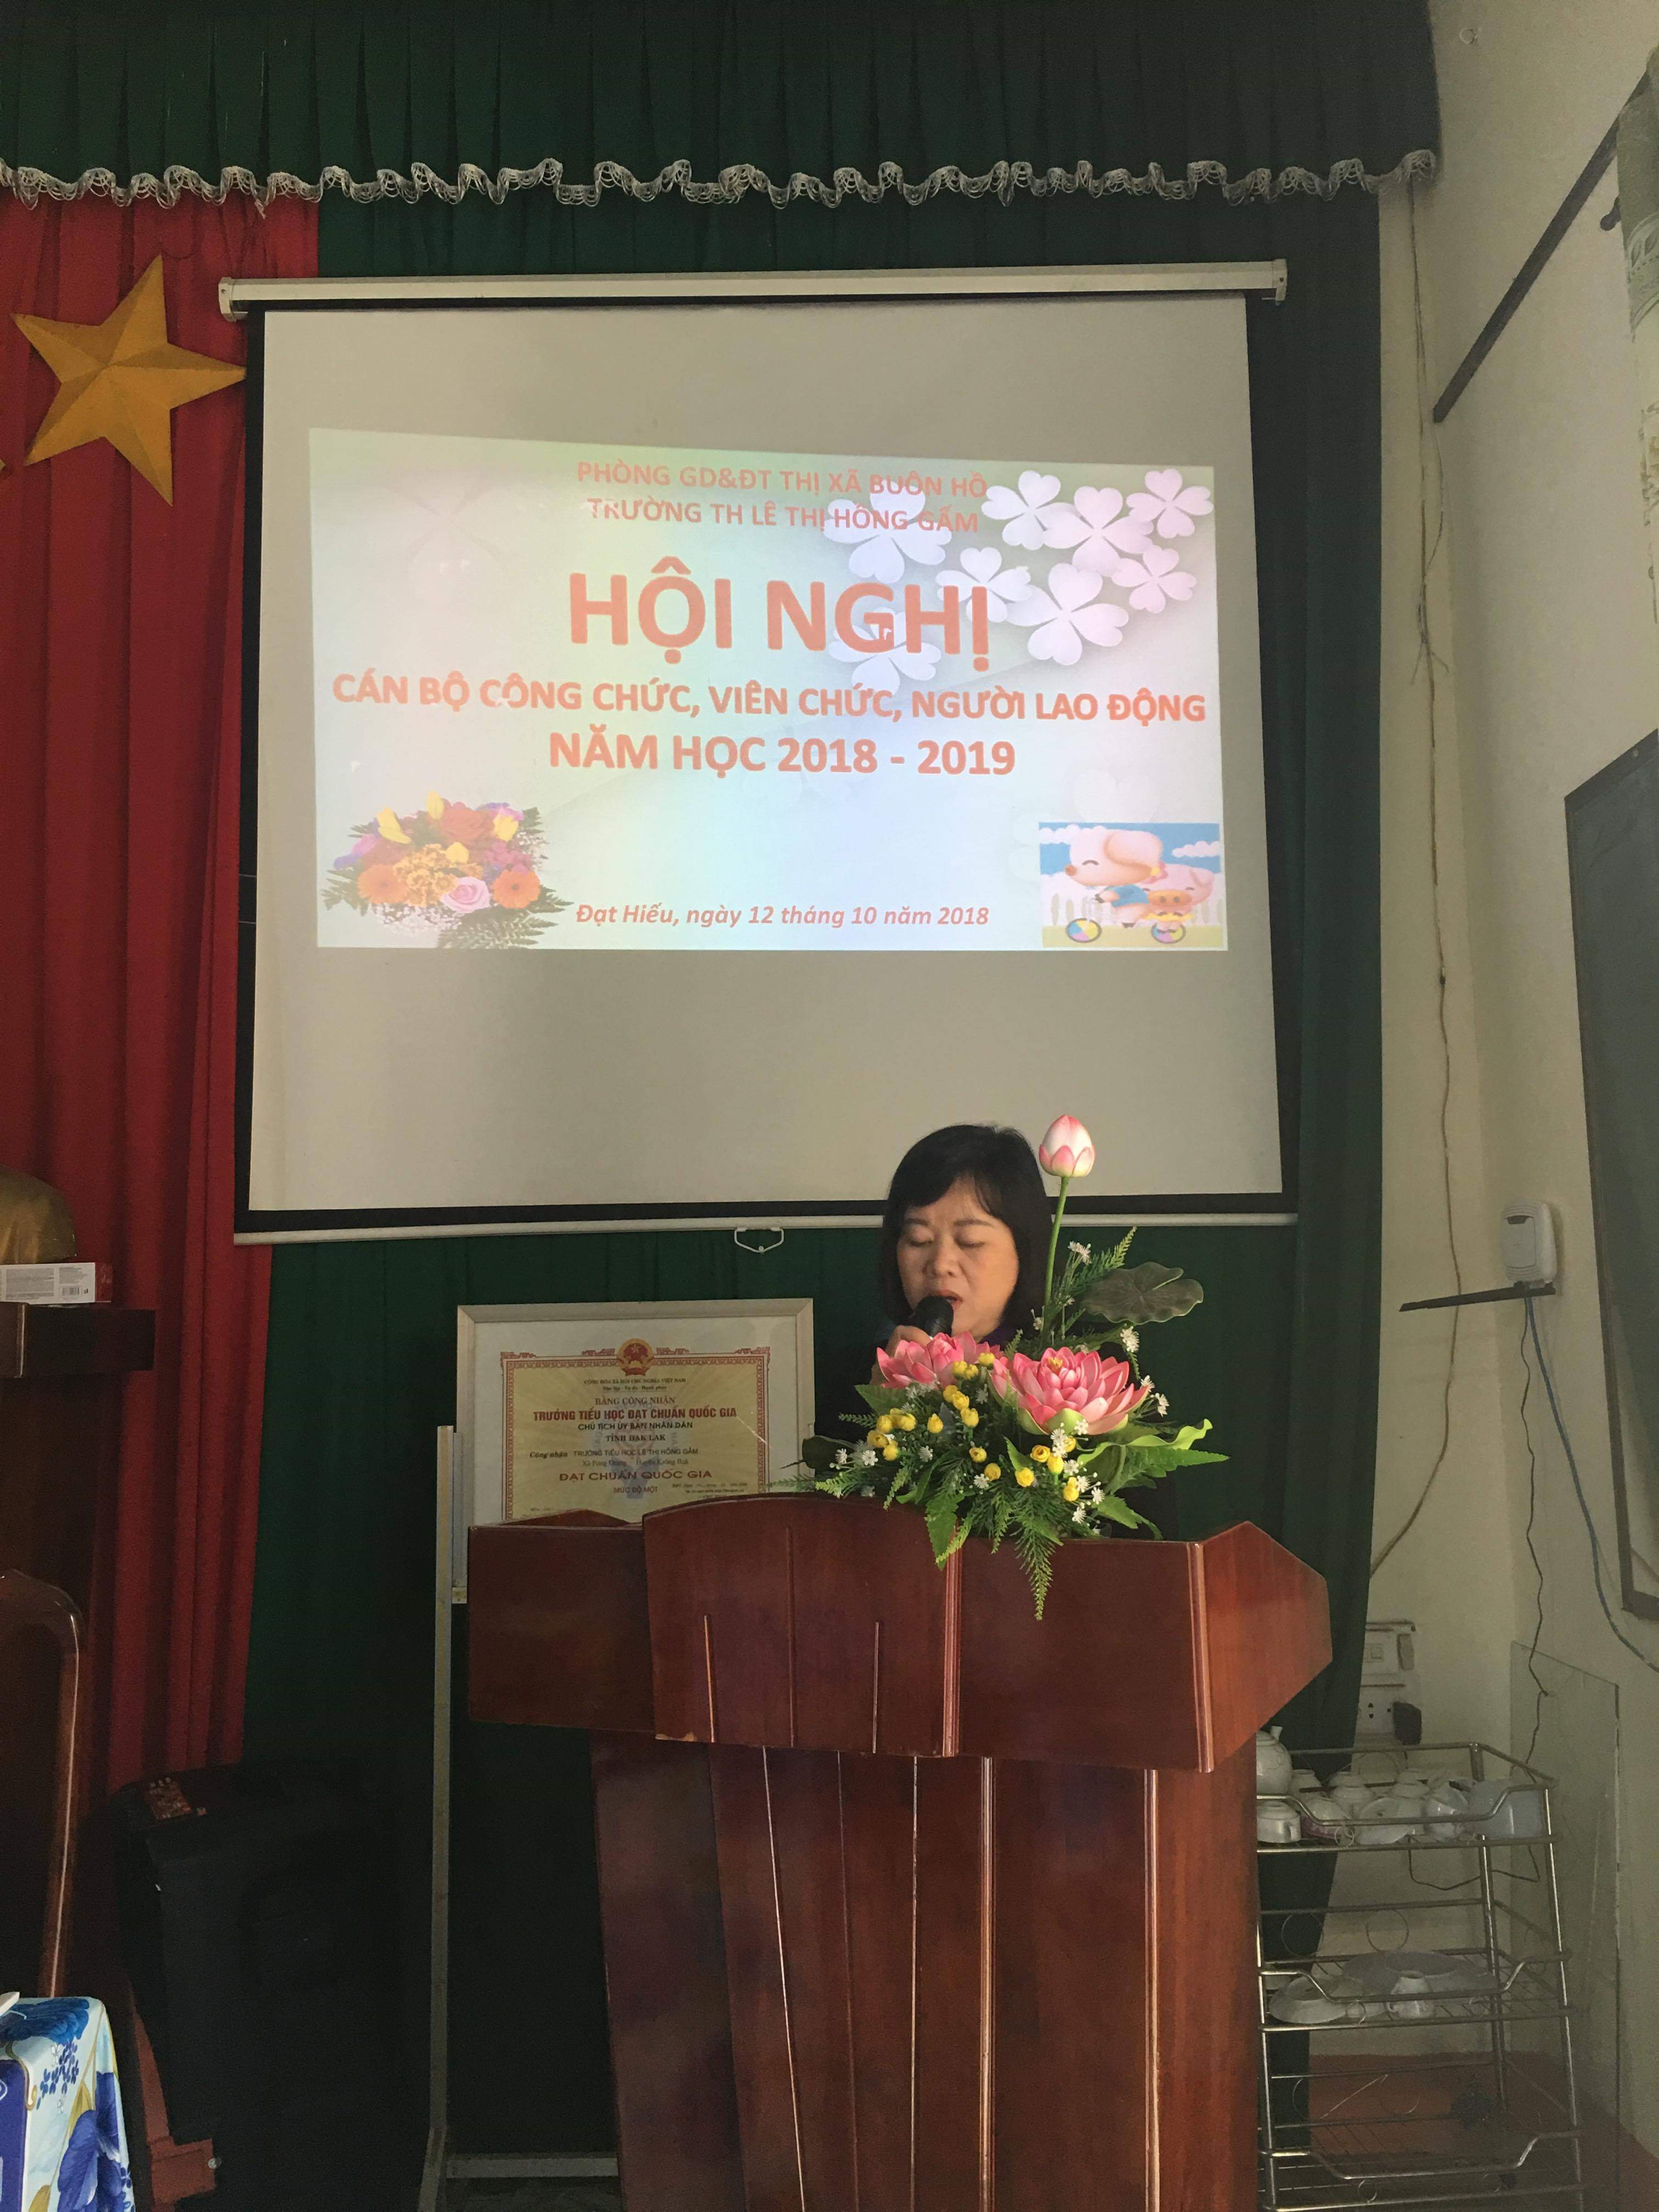 HỘI NGHỊ CÁN BỘ CÔNG CHỨC, VIÊN CHỨC, NGƯỜI LAO ĐỘNG NH 2018 -2019